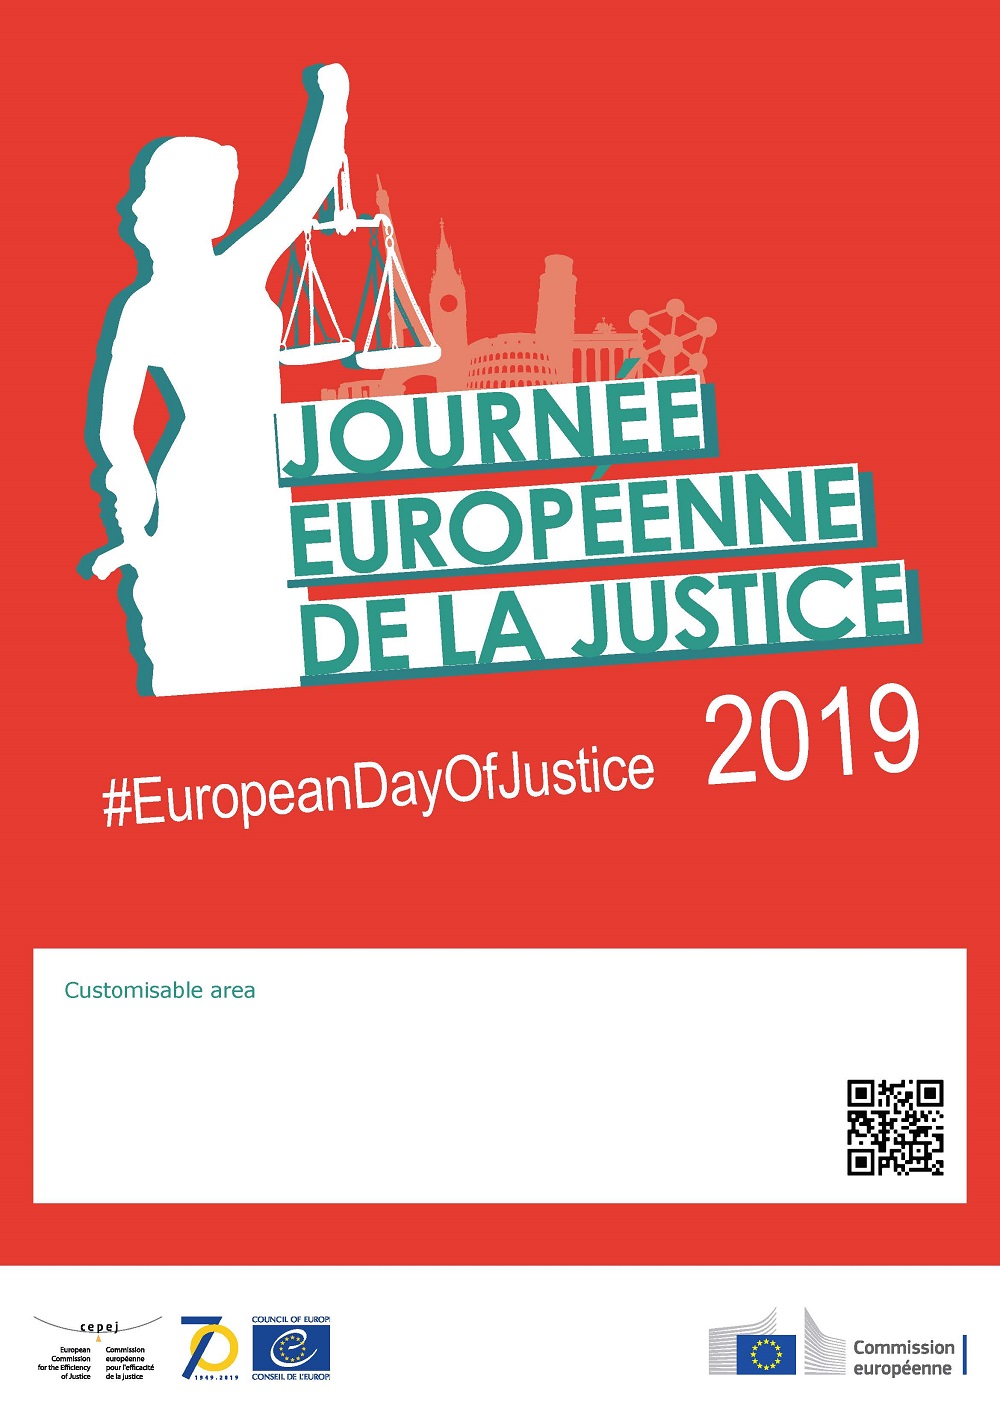 Résultat de recherche d'images pour "journée européenne de la justice"